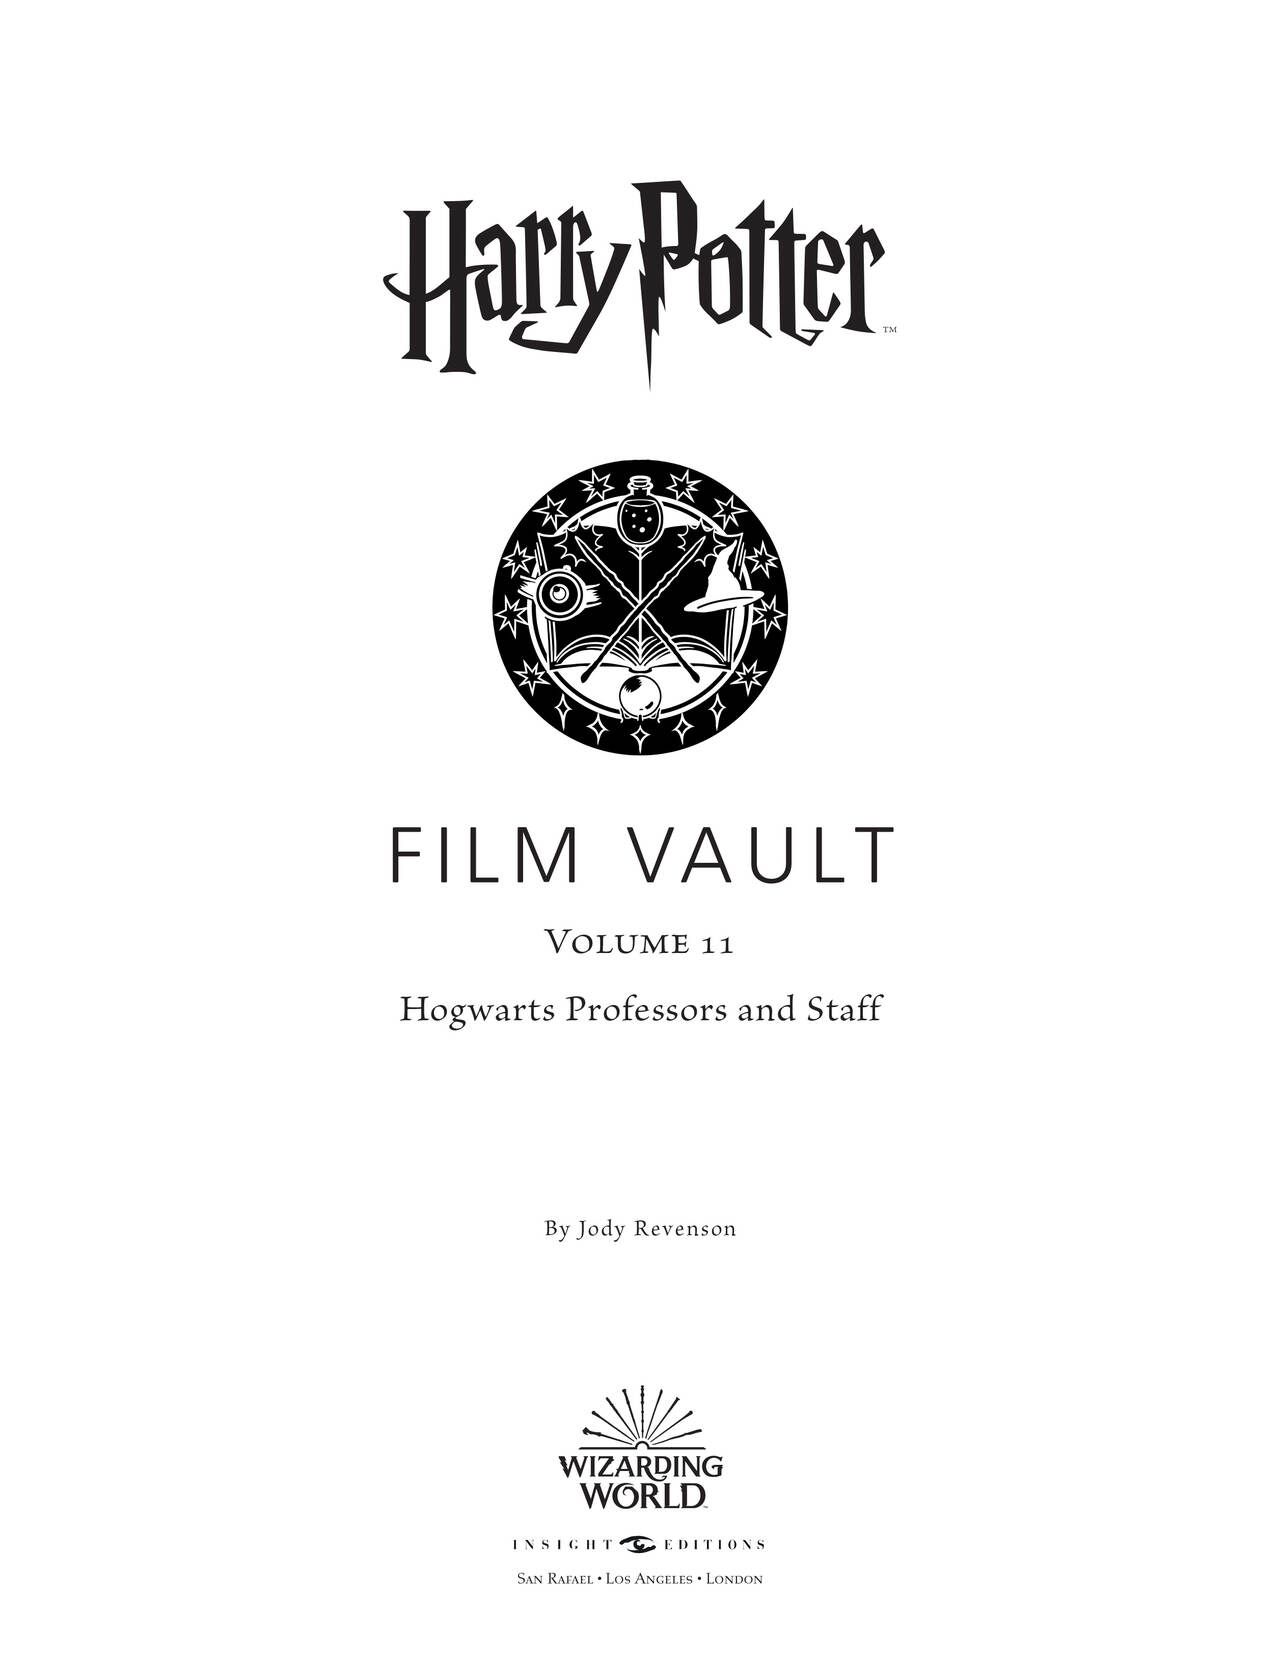 Harry Potter - Film Vault v11 - Hogwarts Professors and Staff 5